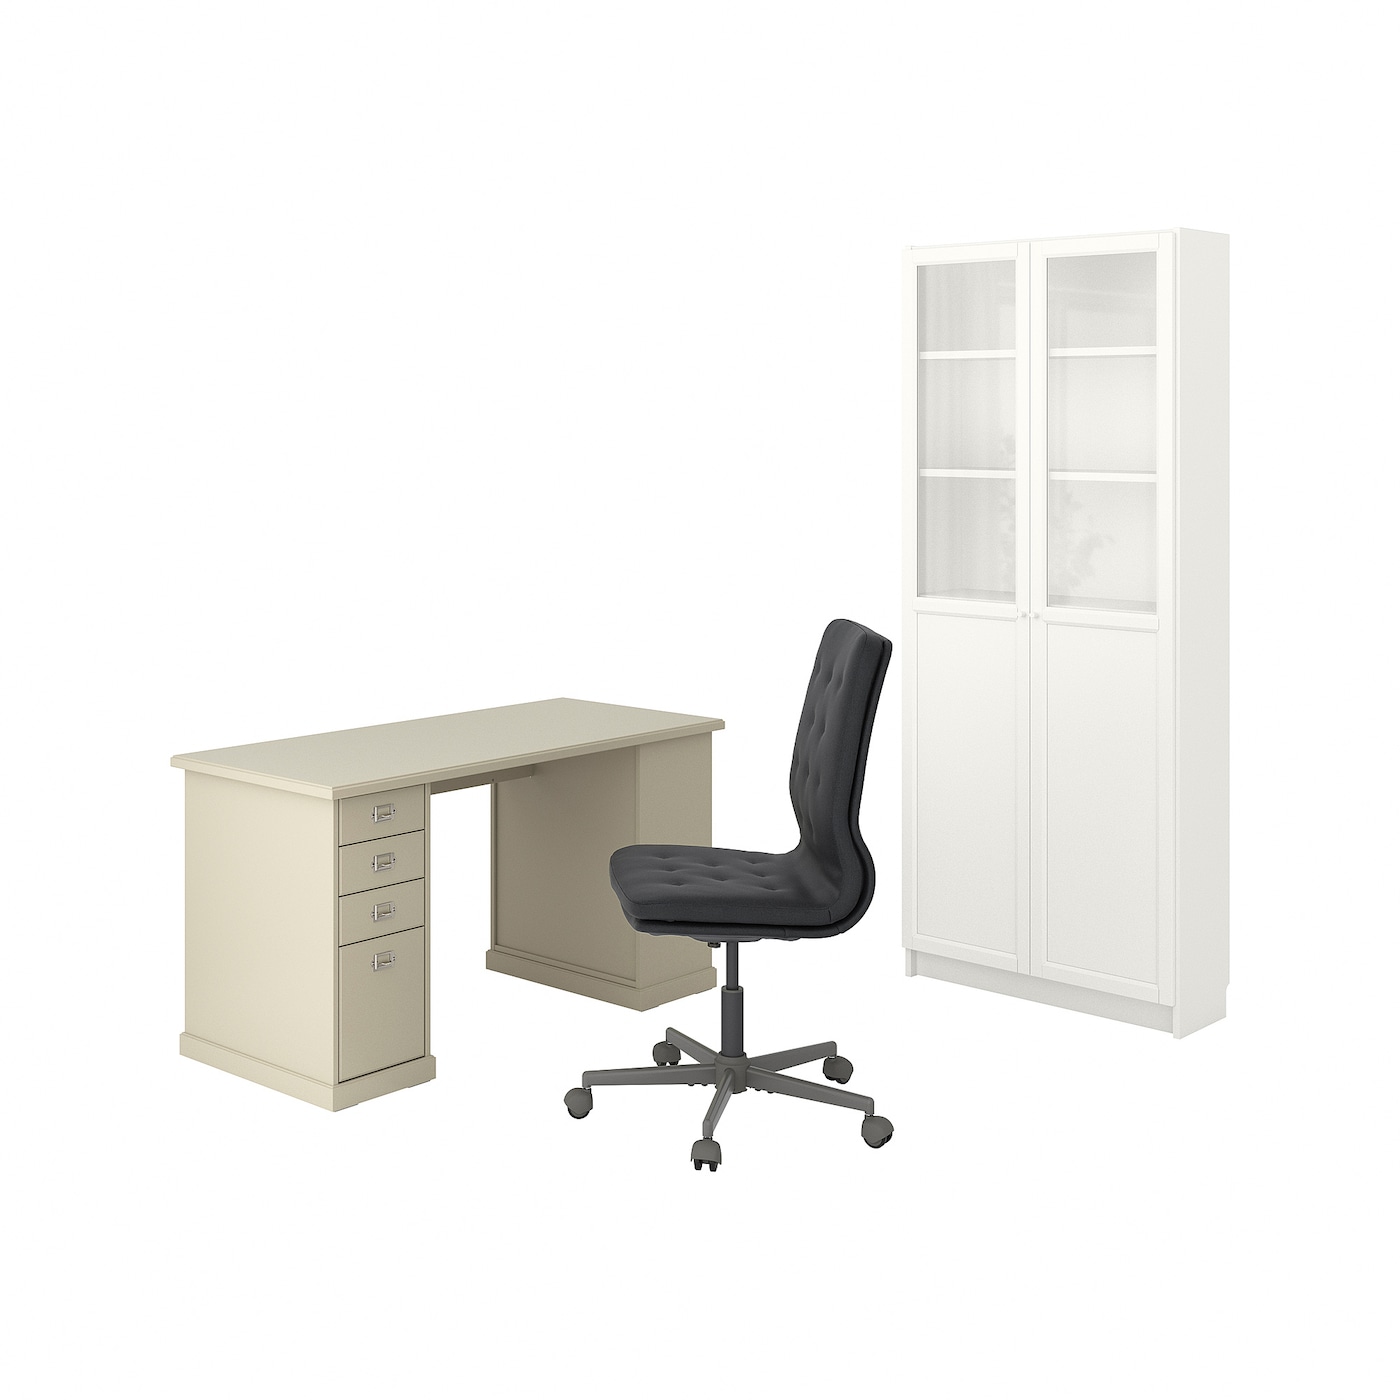 Комбинация письменного стола/шкафа и вращающегося стула - IKEA MULLFJÄLLET, бежевый/светло-серый, МУЛЛЬФЬЕЛЛЕТ ИКЕА